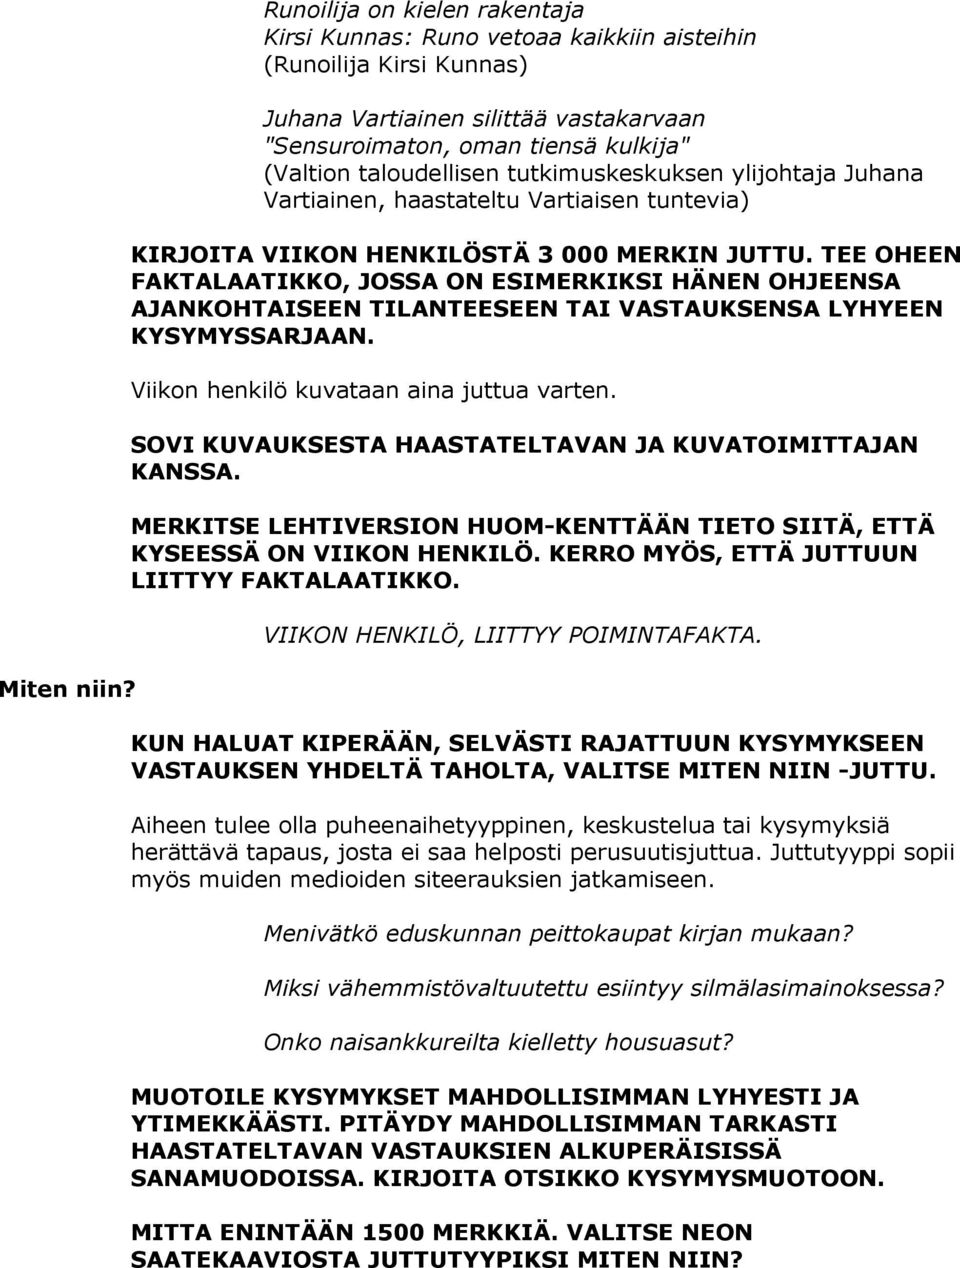 tutkimuskeskuksen ylijohtaja Juhana Vartiainen, haastateltu Vartiaisen tuntevia) KIRJOITA VIIKON HENKILÖSTÄ 3 000 MERKIN JUTTU.